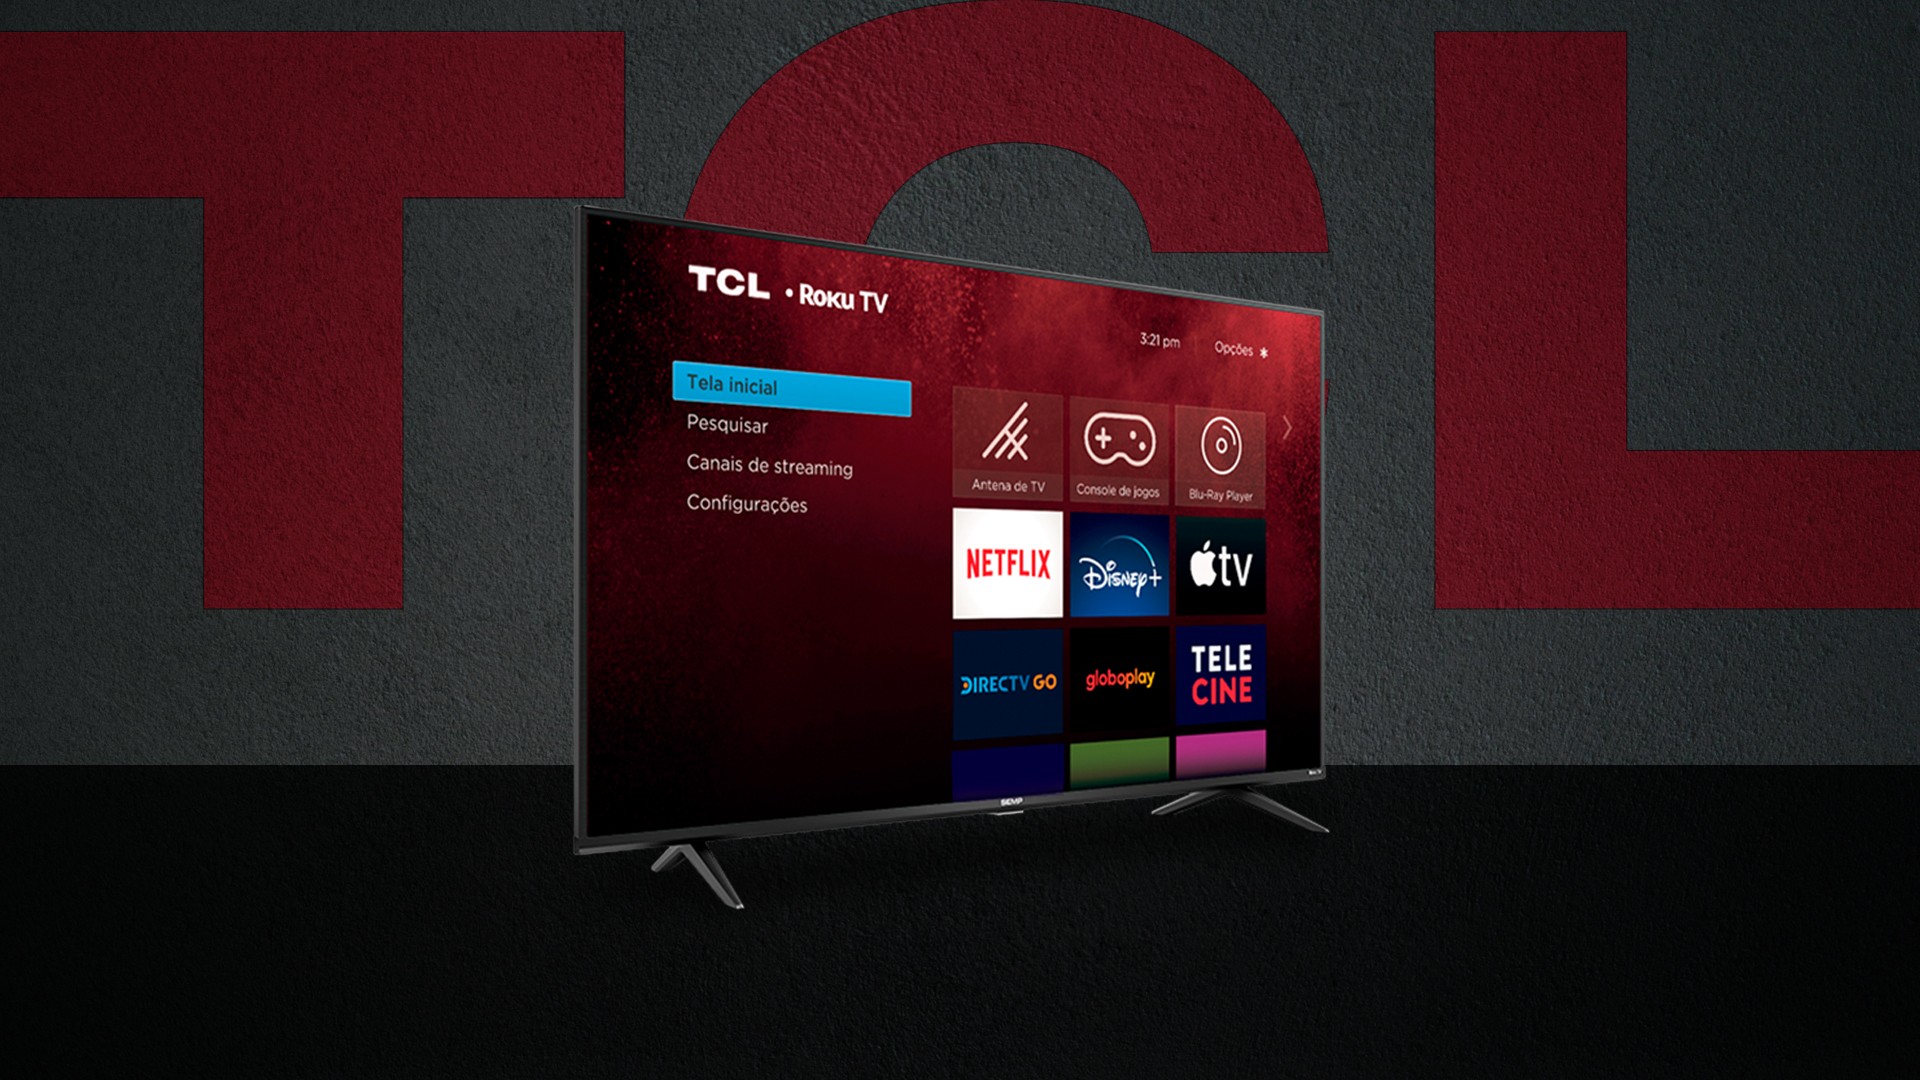 TCL anuncia novas Smart TVs com Roku TV a partir de R$ 1.939 12